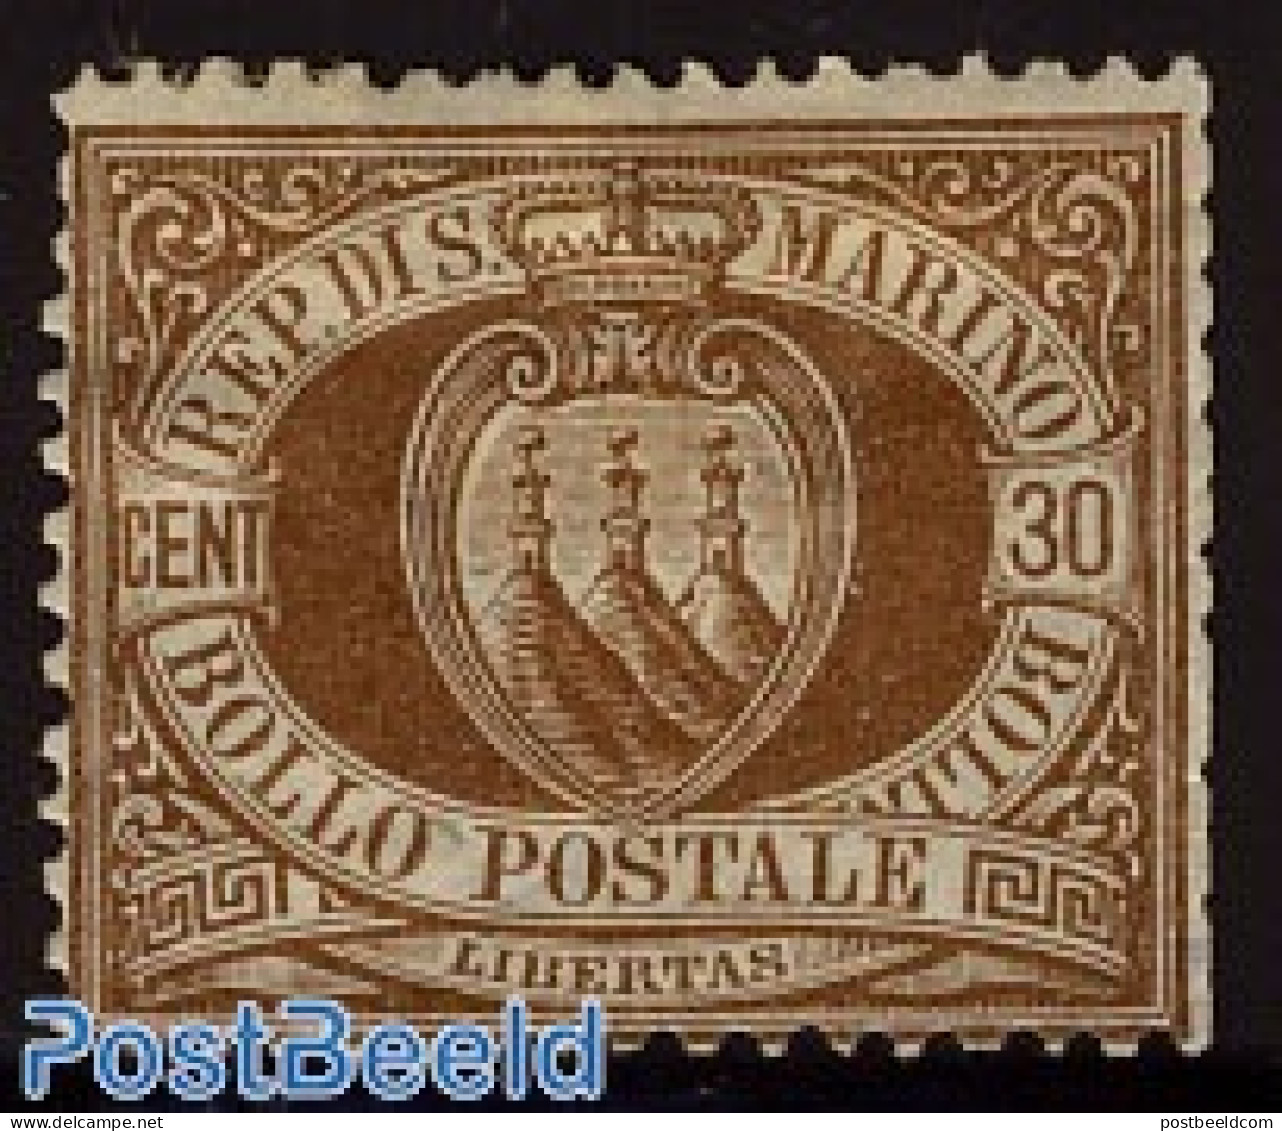 San Marino 1877 30c. Brown Unused Hinged, Unused (hinged) - Ungebraucht